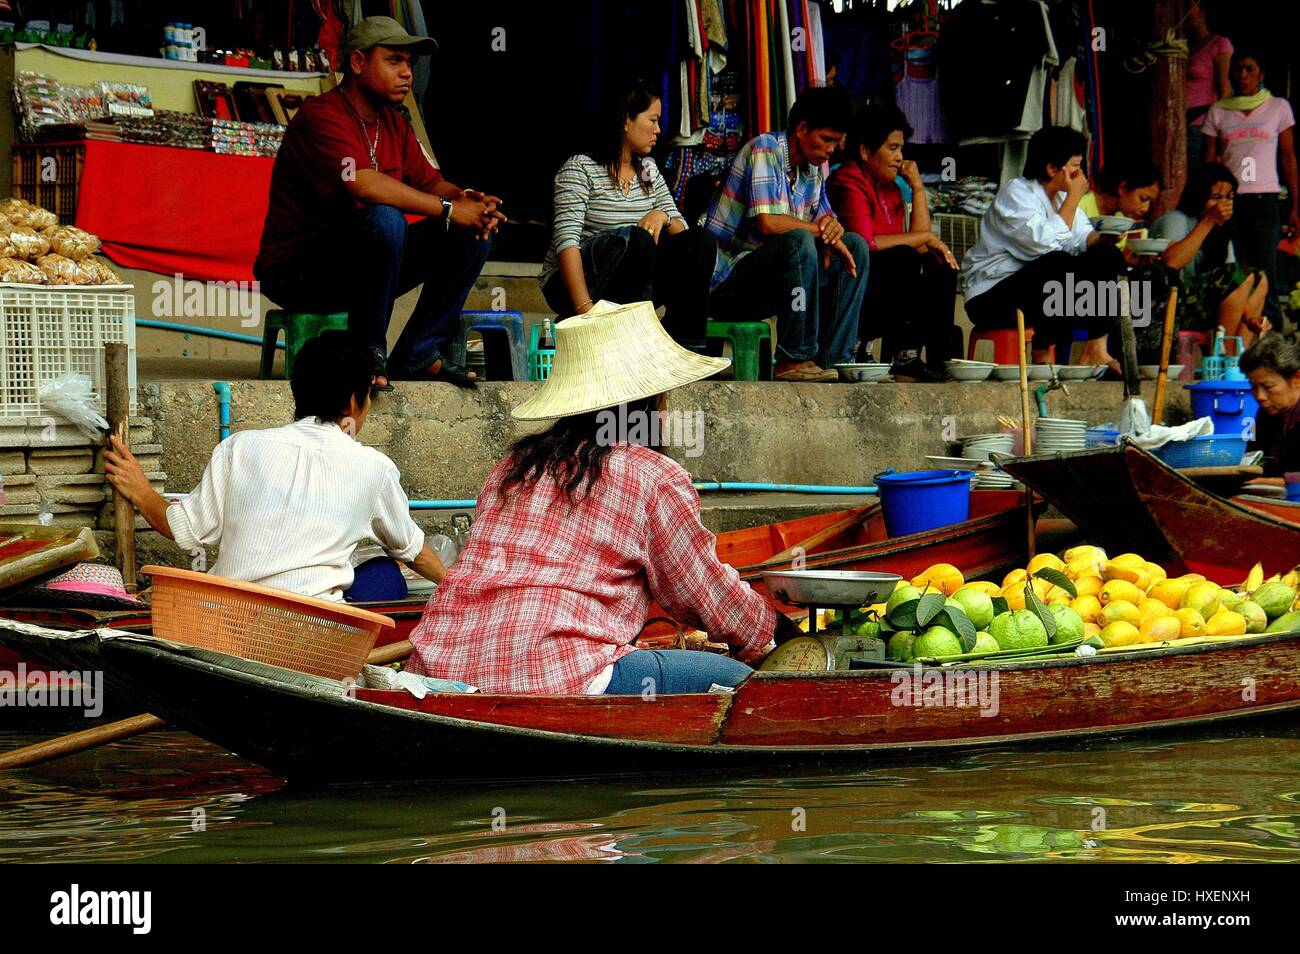 Damnoen Saduak, Thailand - December 27, 2005:  Vendor selling fruits from her flat bottomed wooden boat at the Damnoen Saduak Floating Market Stock Photo